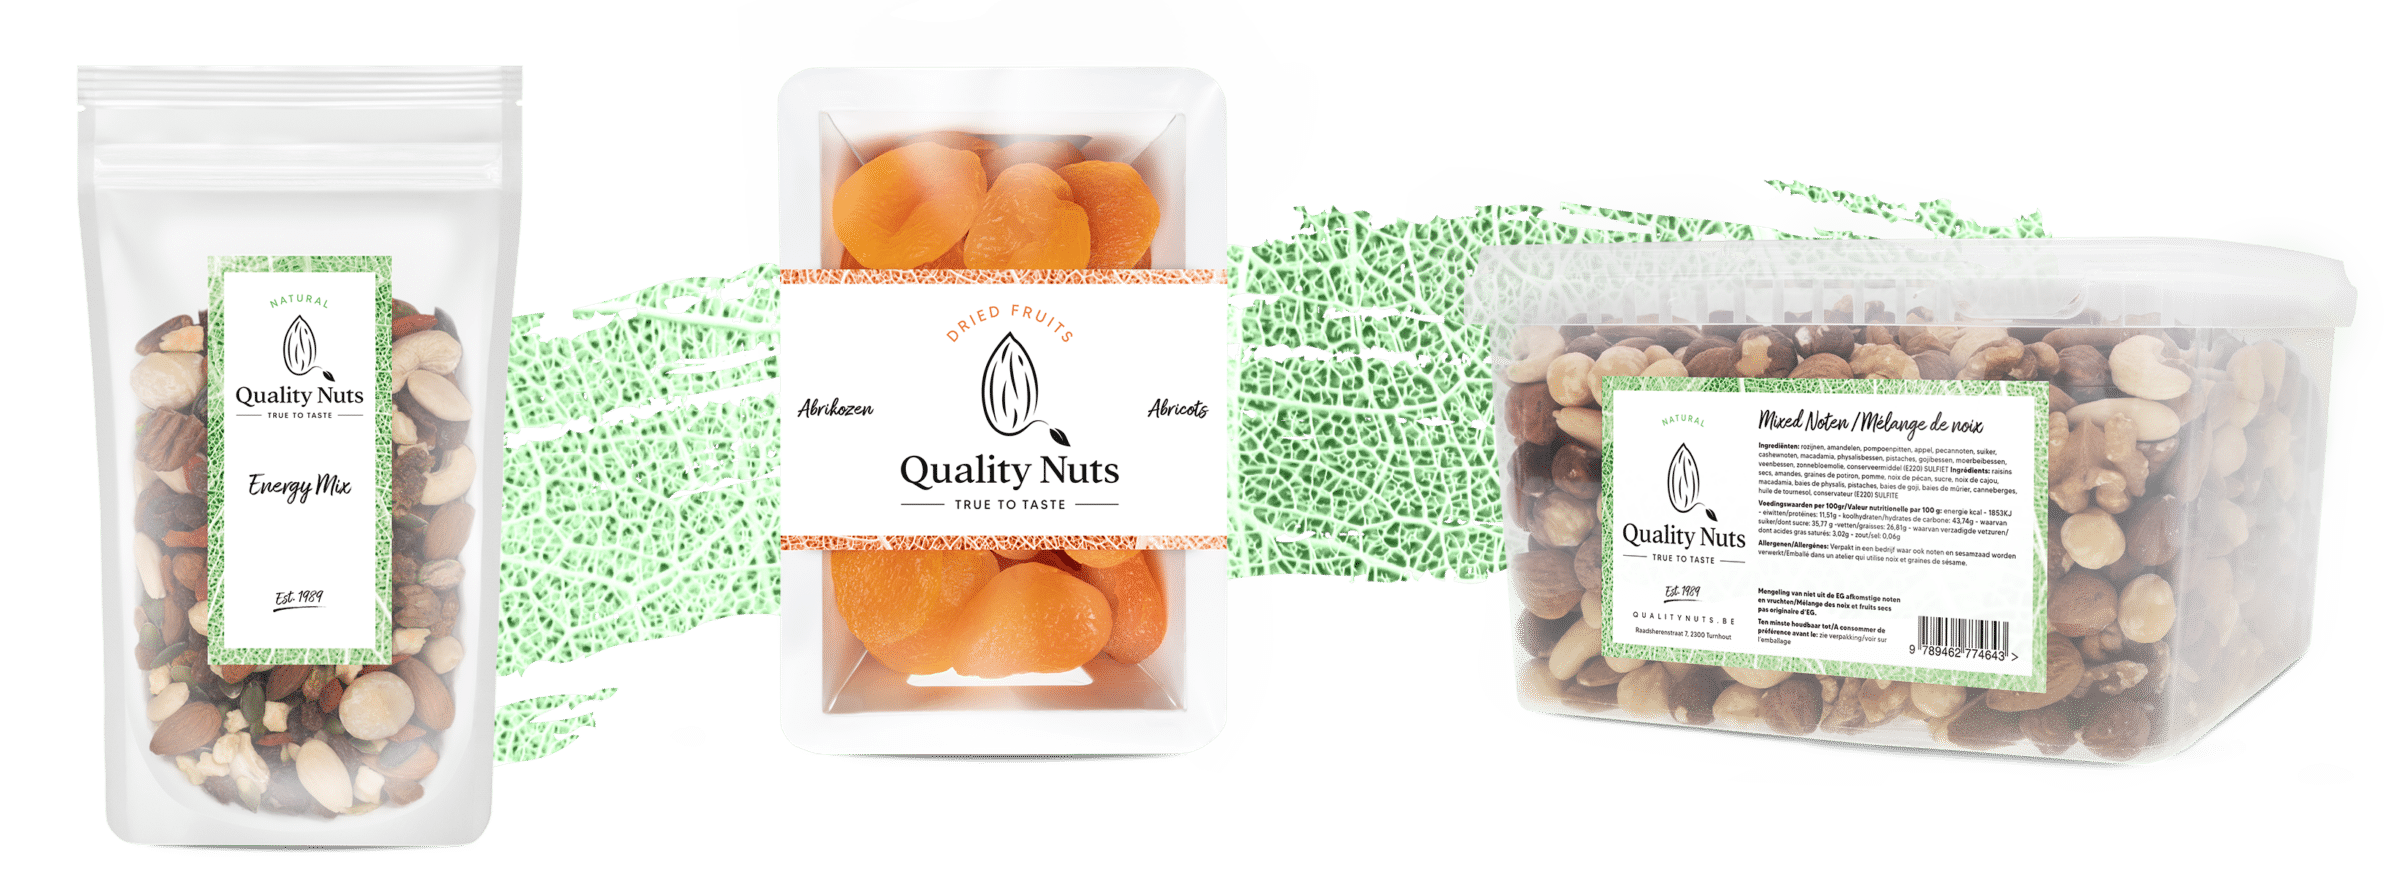 Verschillende verpakkingen van kwalitatieve walnoten en gedroogd fruit van Quality Nuts.